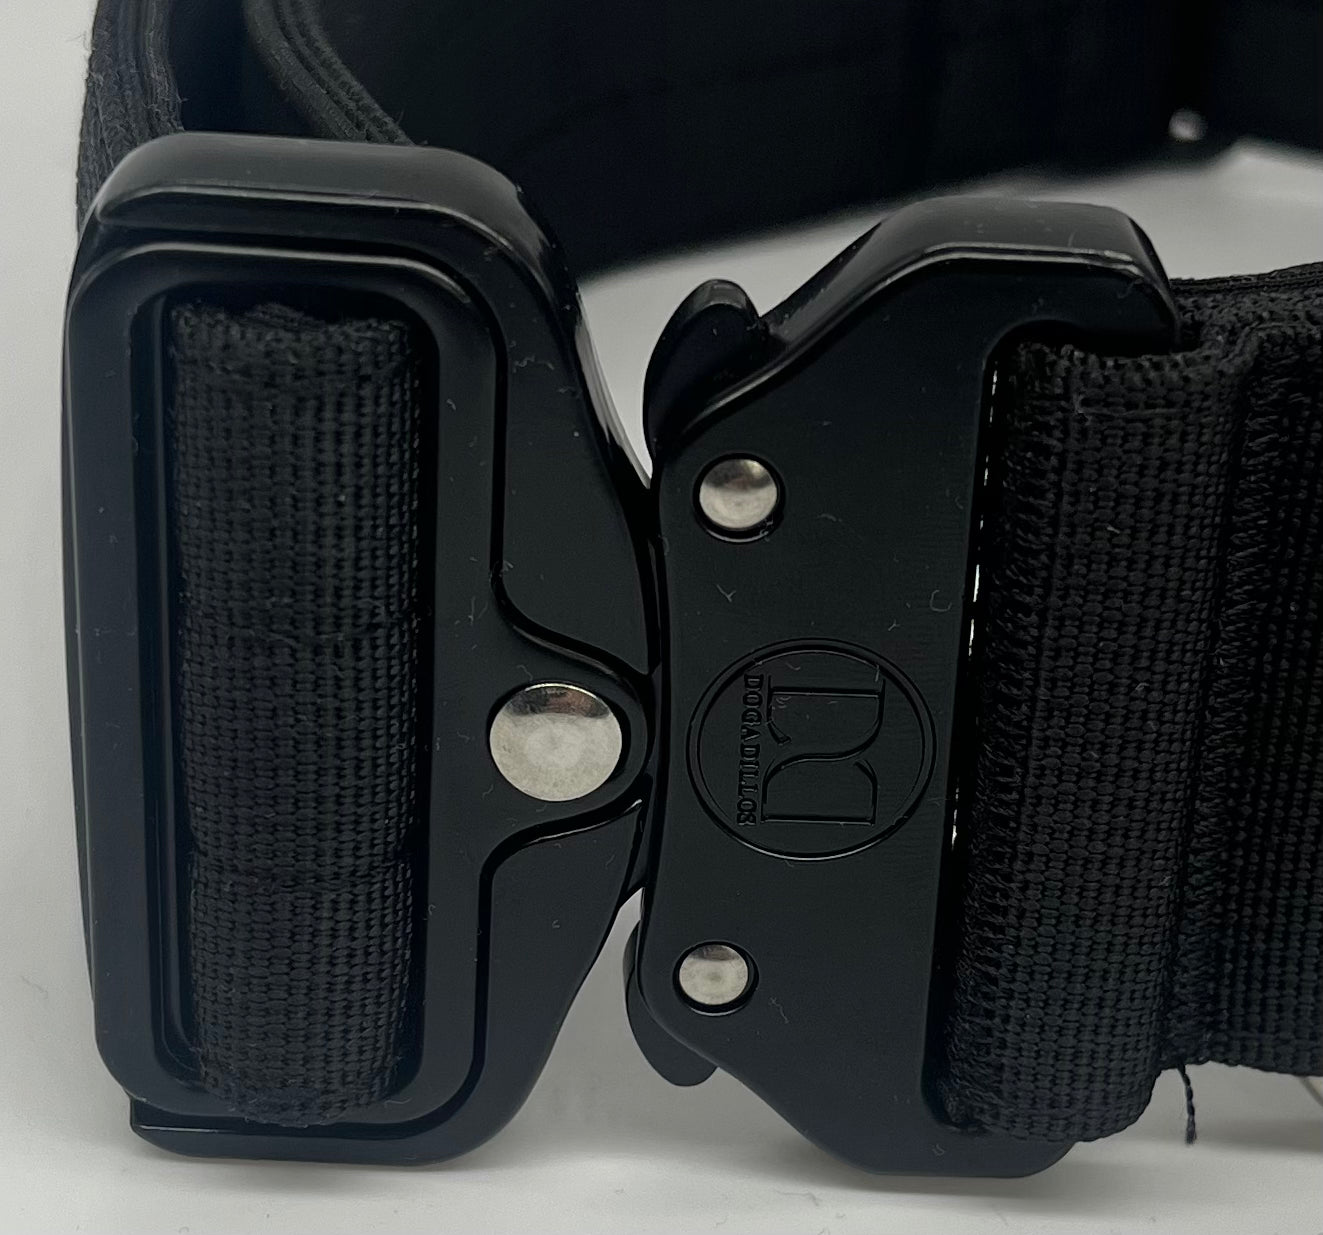 5cm Active collar | NO HANDLE - Black